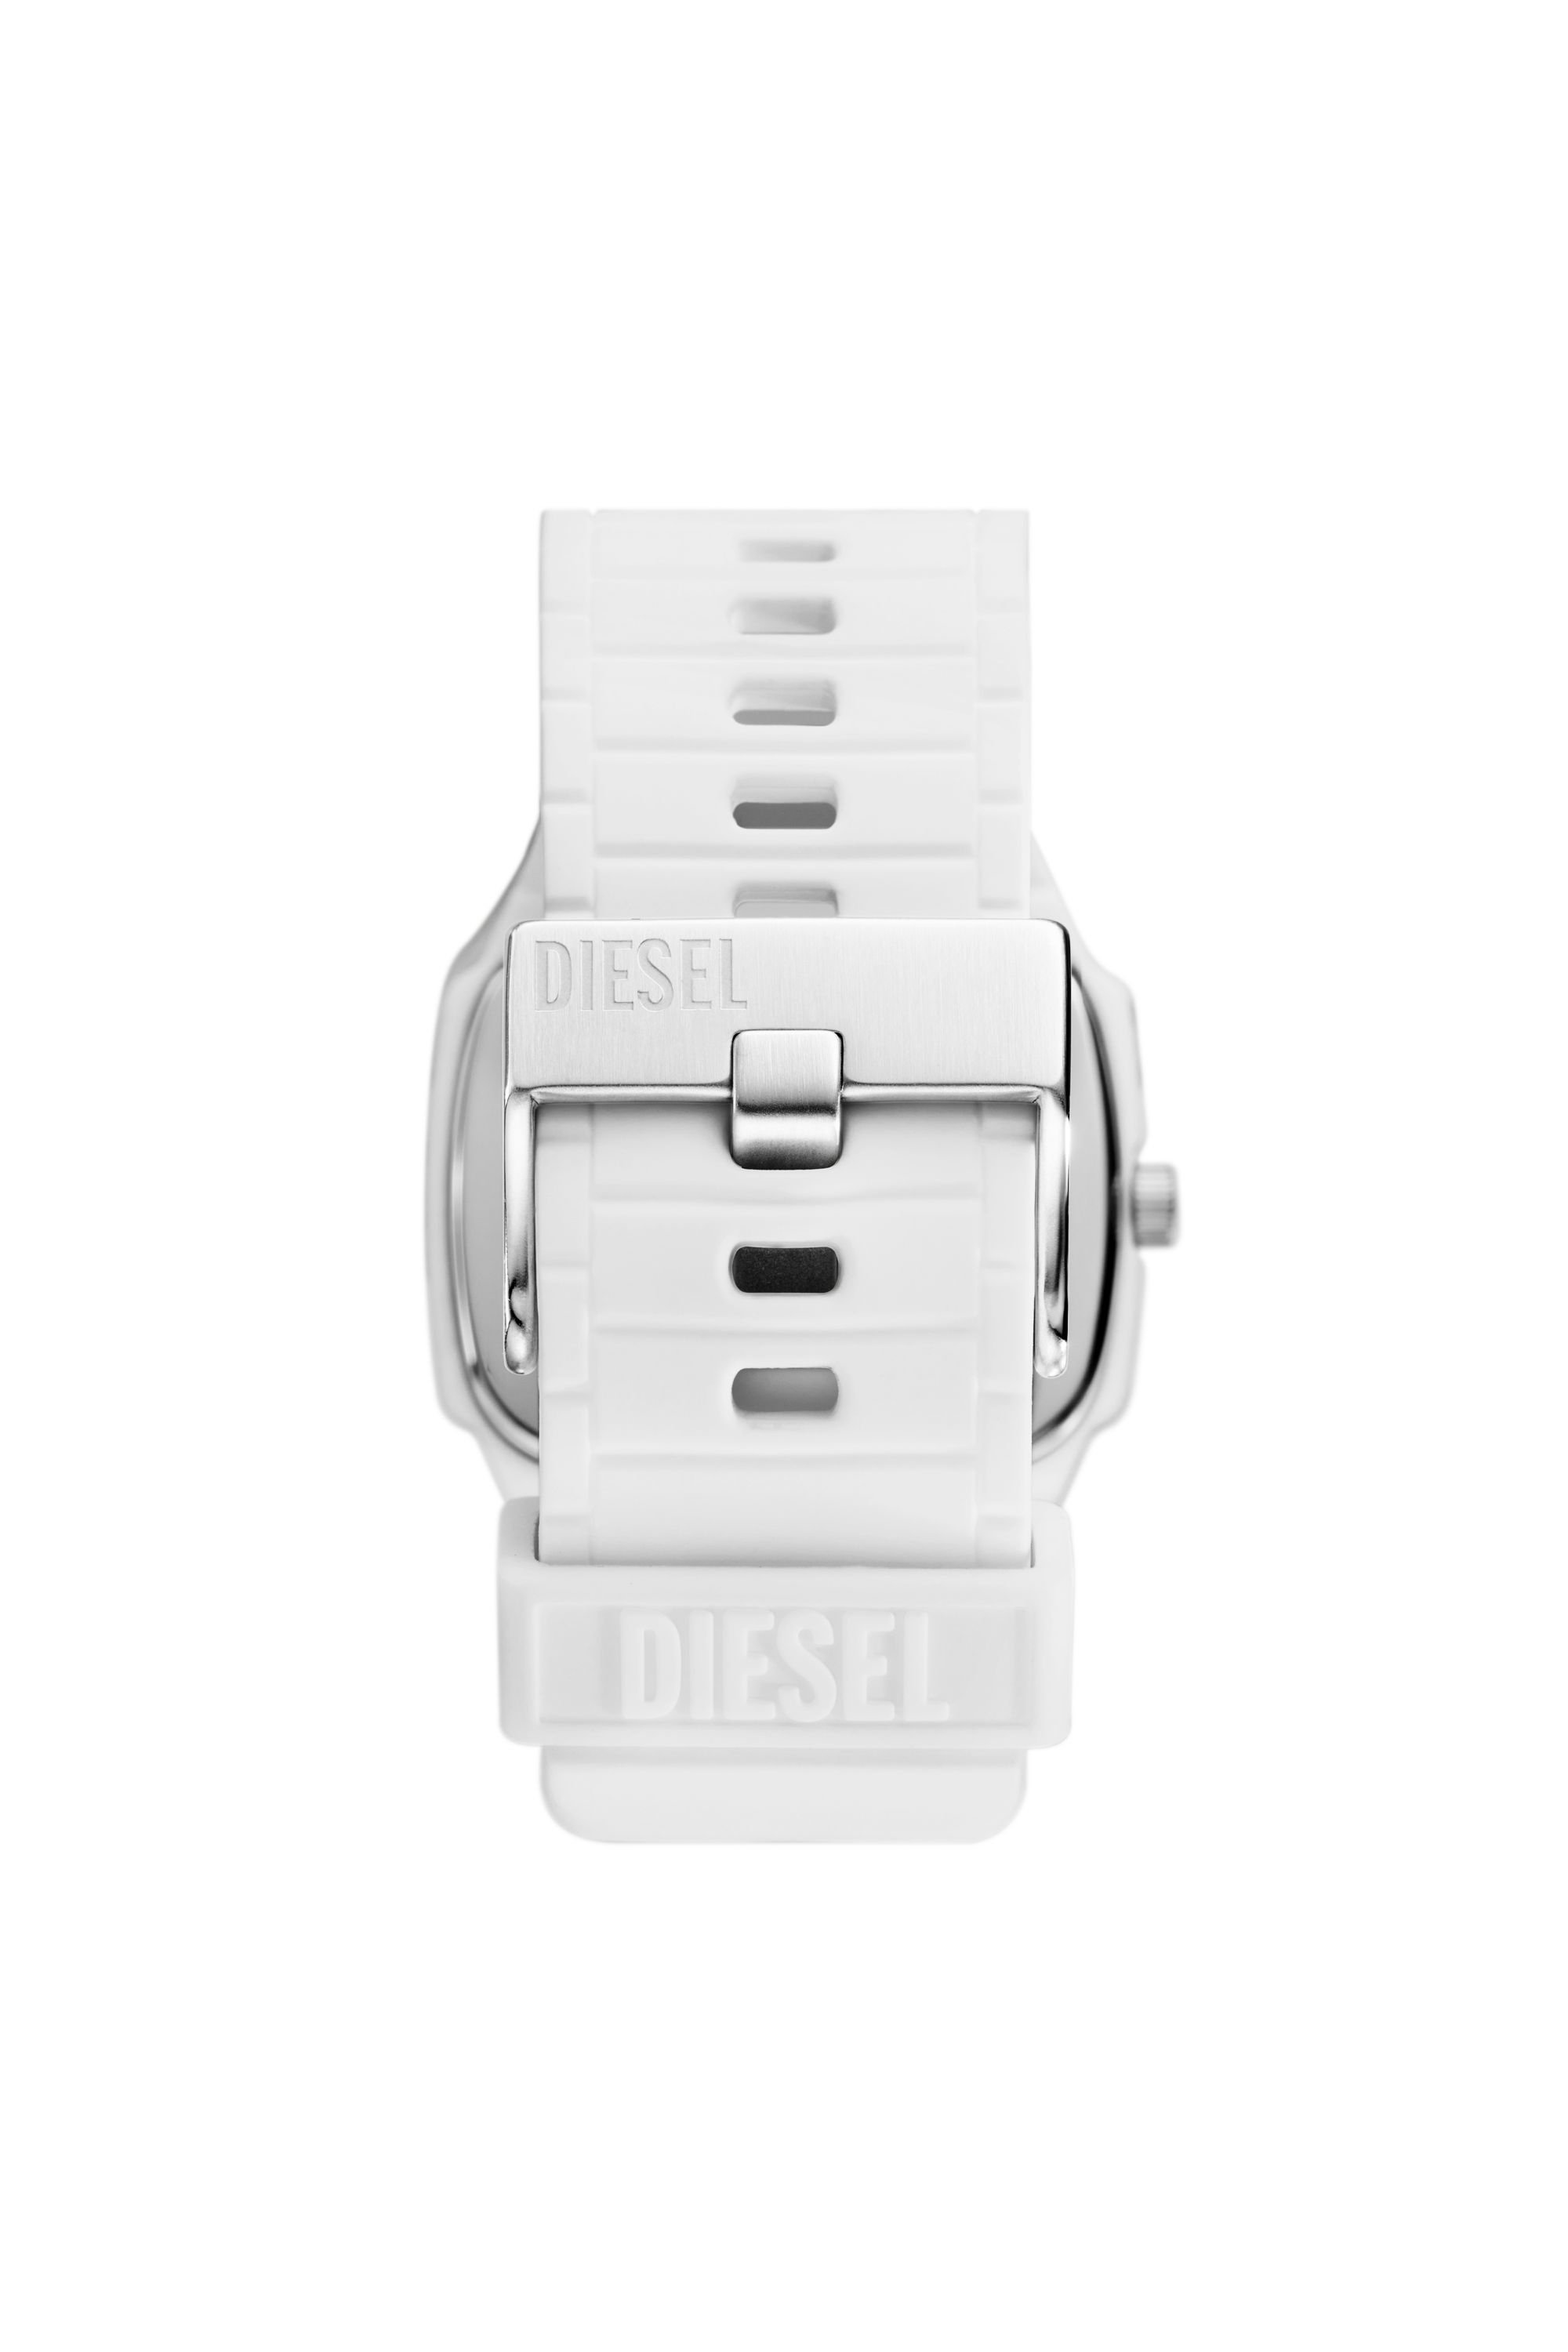 Diesel - DZ2204, Hombre Reloj Cliffhanger 2.0 de silicona blanca in Blanco - Image 2